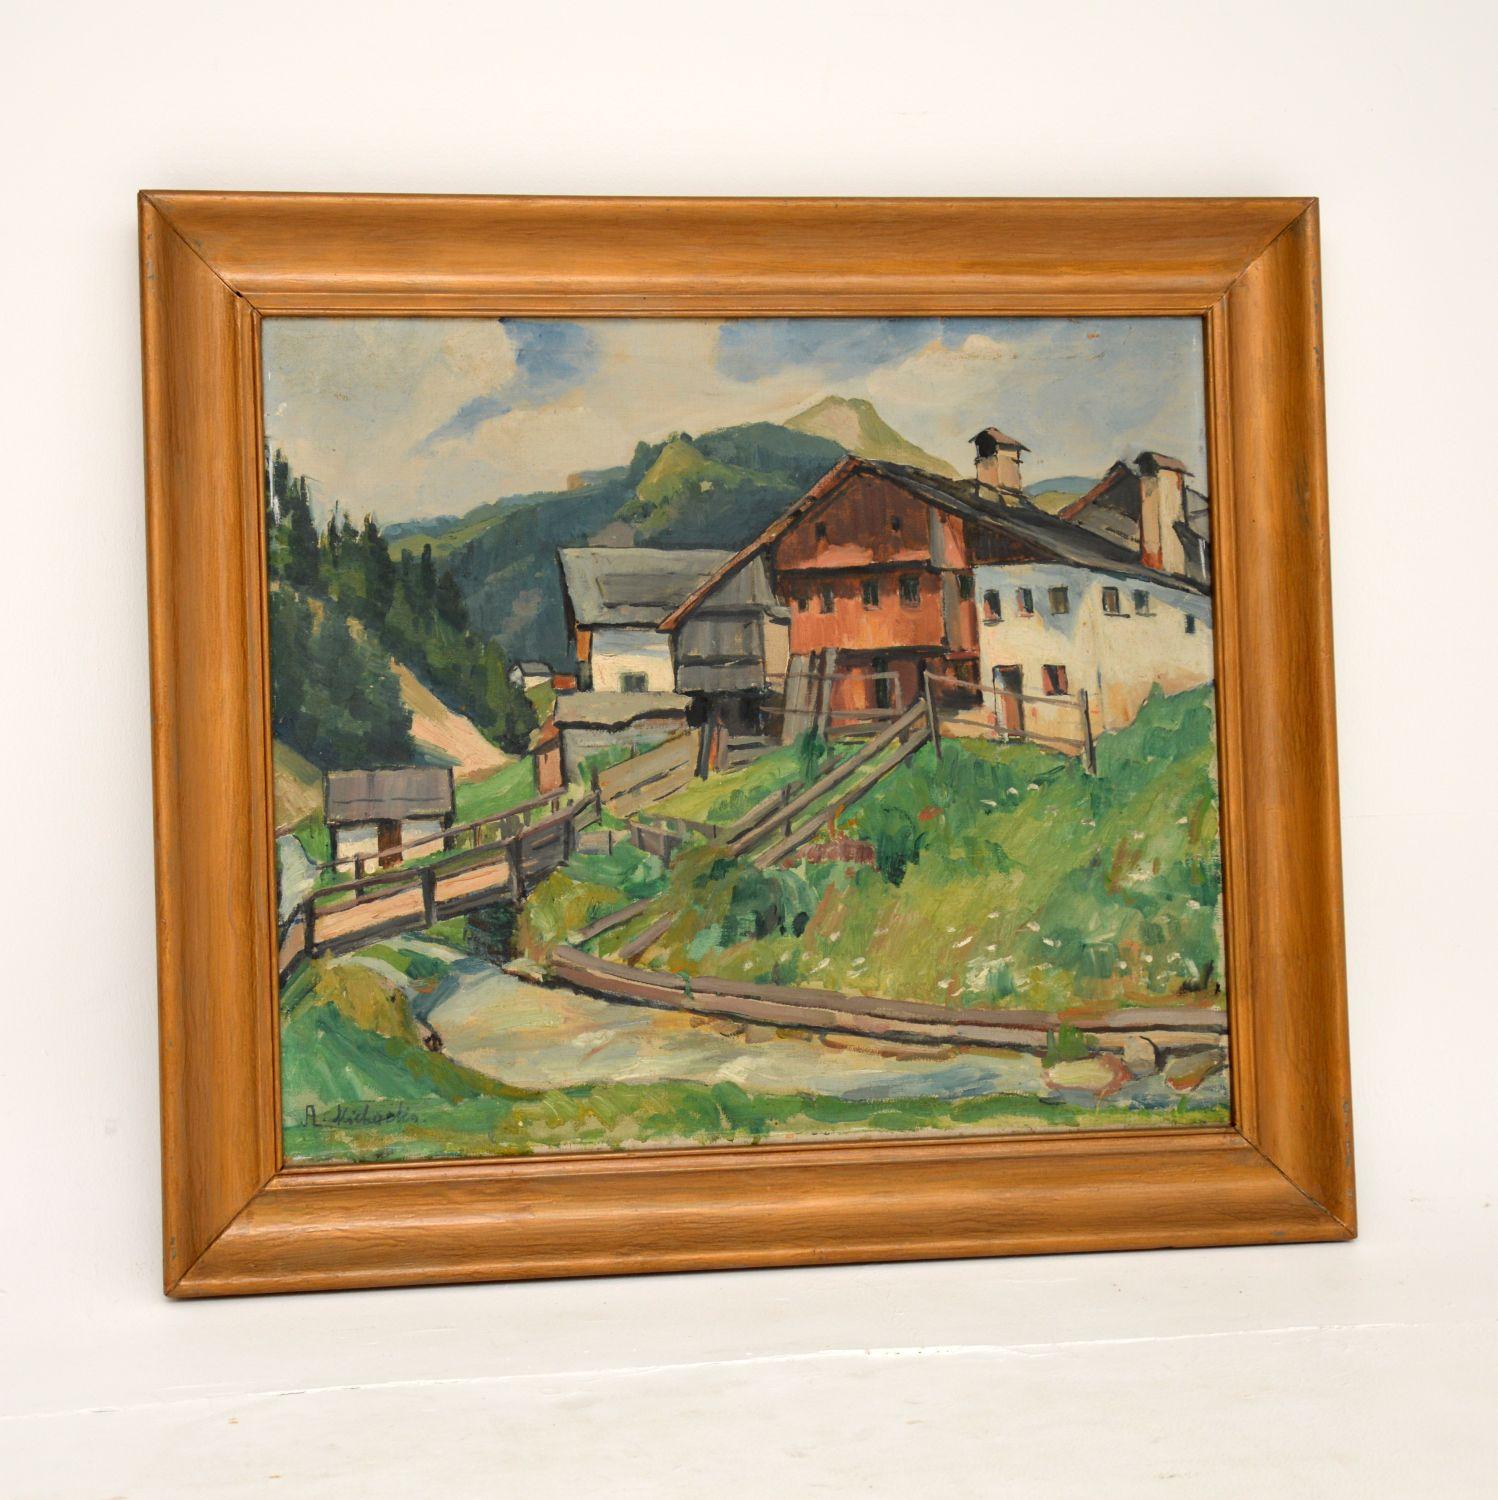 Une belle et intéressante peinture à l'huile ancienne originale signée par l'artiste A. Artistics. Datée de 1937, elle est de style impressionniste.

Il est magnifiquement exécuté et représente une belle scène de montagne à la campagne.

L'état